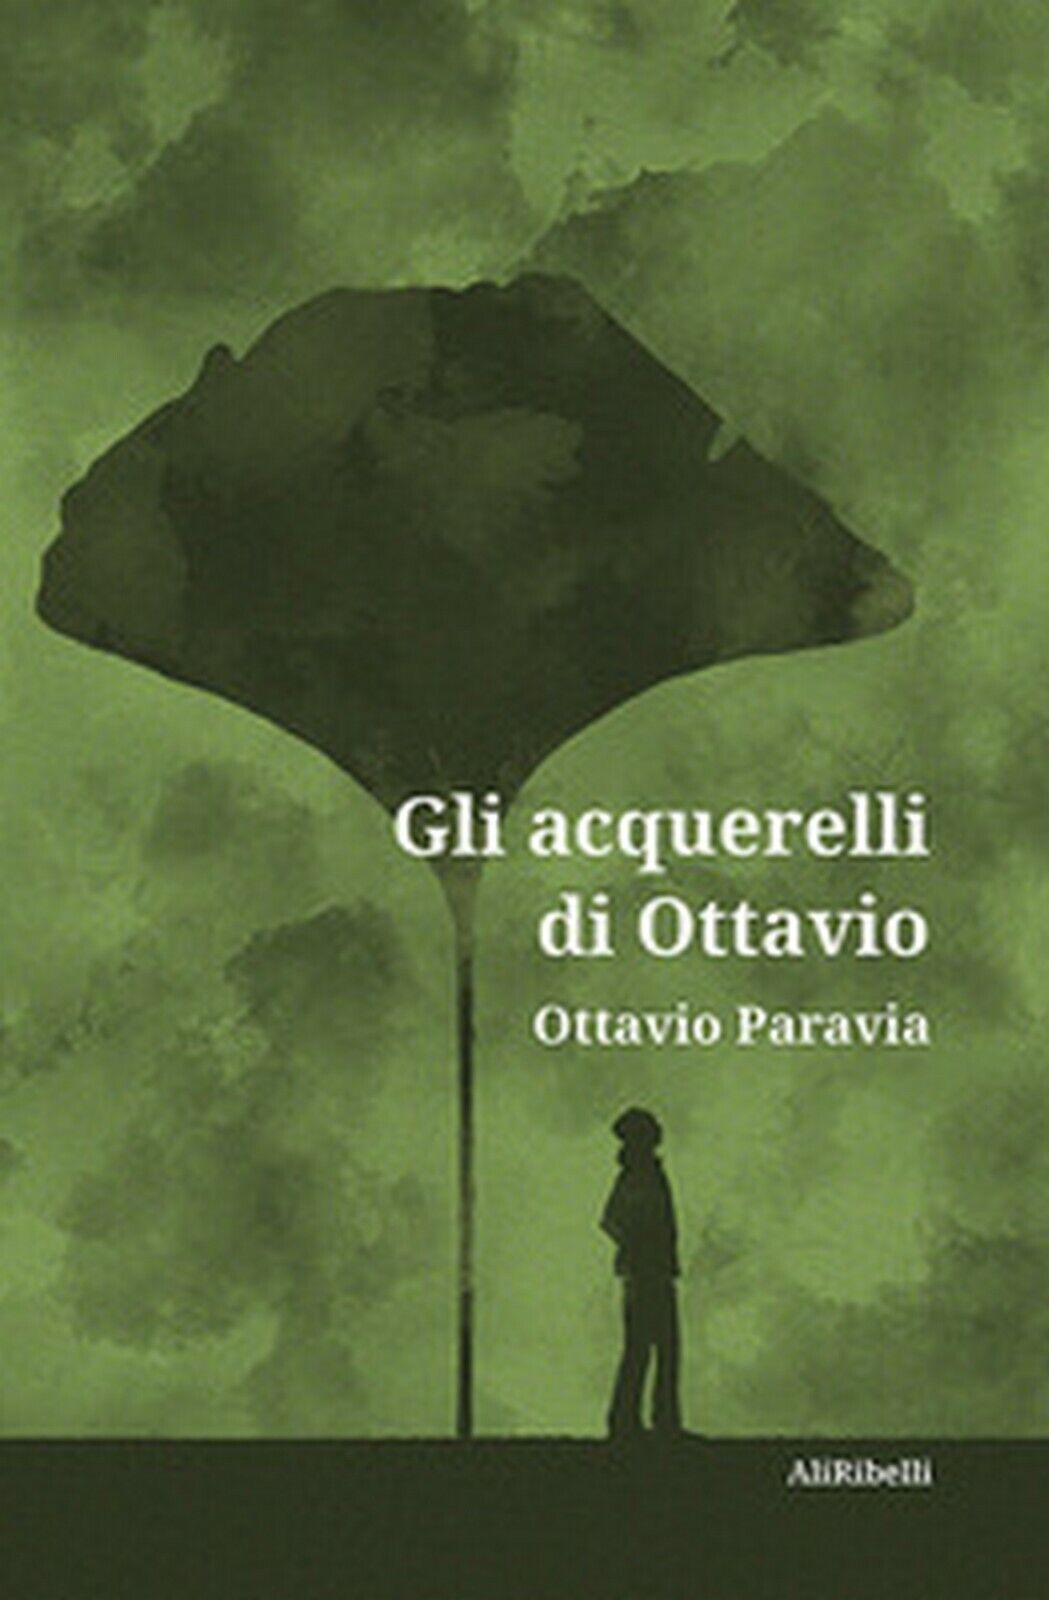 Gli acquerelli di Ottavio  di Ottavio Paravia,  2020,  Ali Ribelli Edizioni libro usato